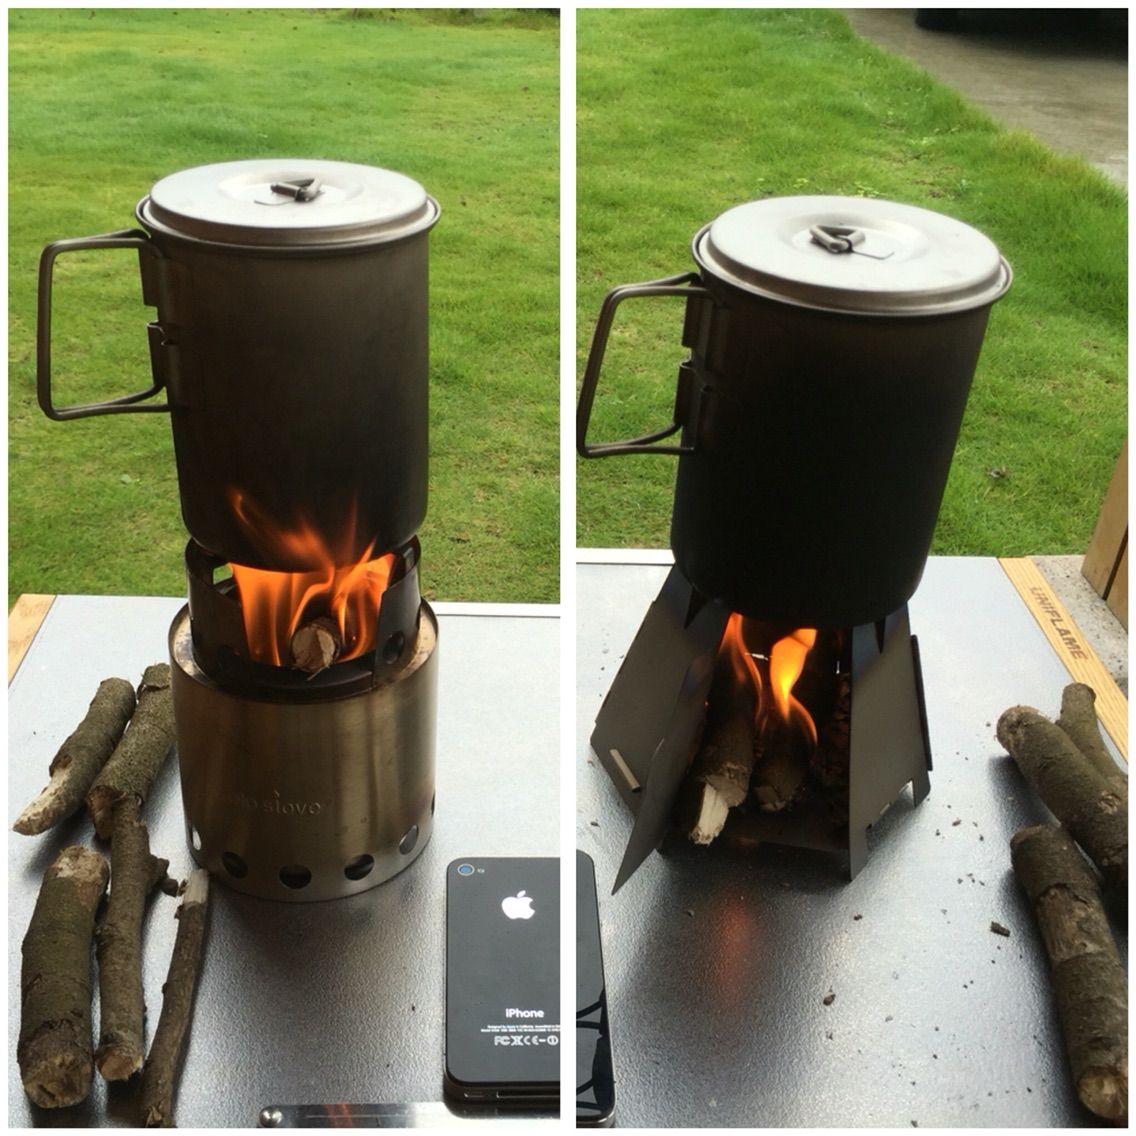 Vargoヘキサゴンウッドストーブとsolo stove（ソロストーブ）の比較 : もっちーの家内安全かわら版